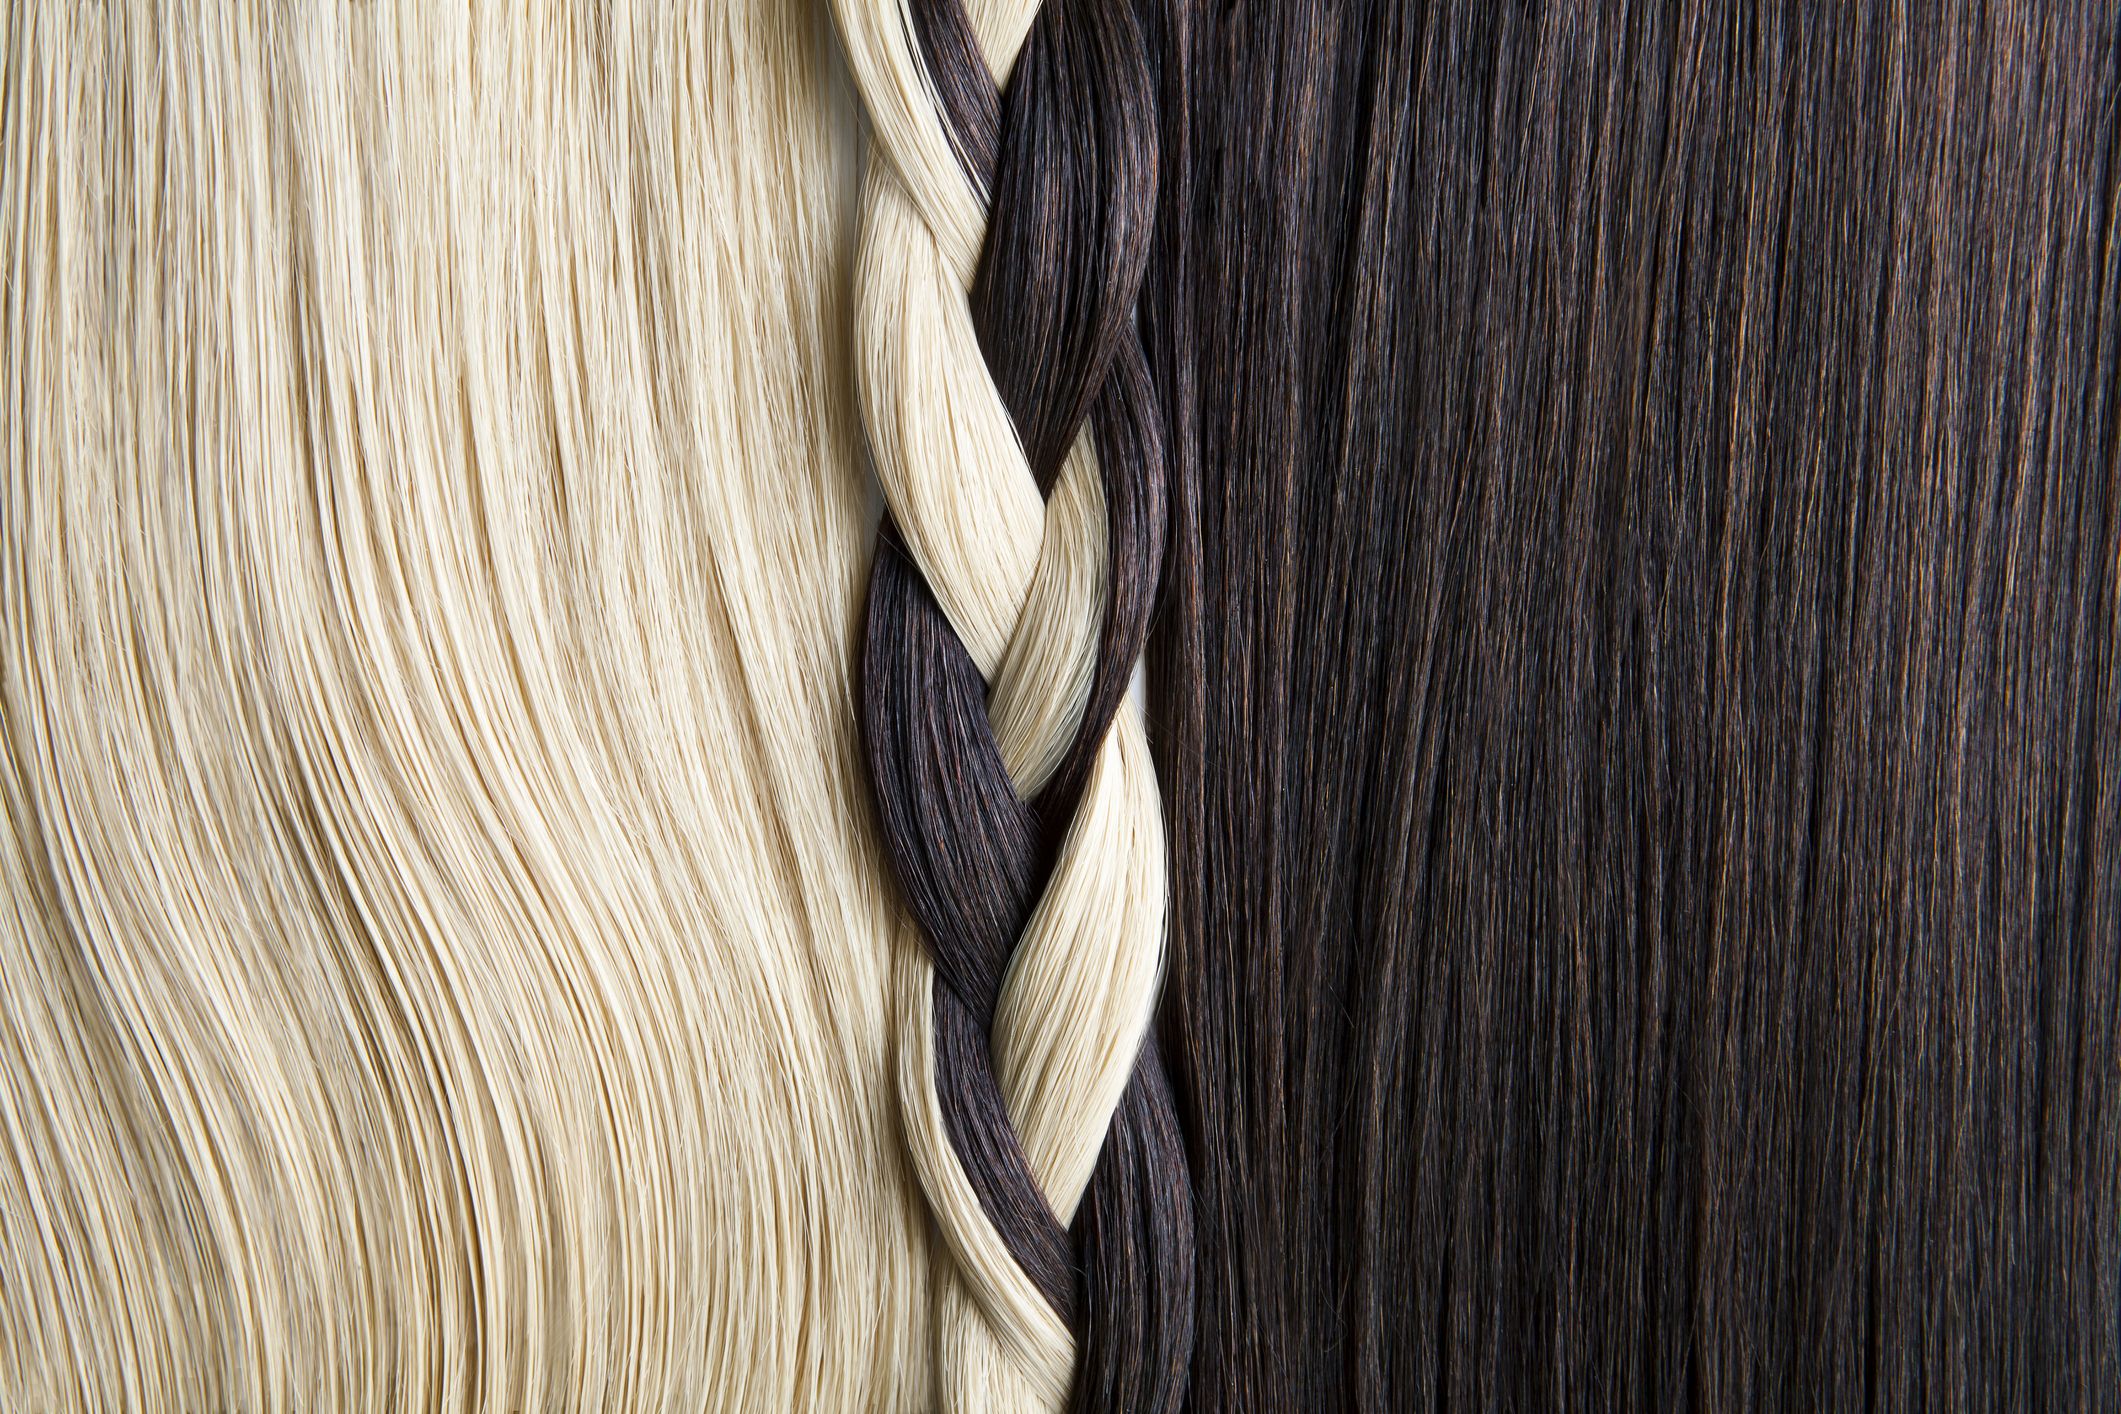 Una guía de morenas para ir de rubias, según los profesionales del cabello